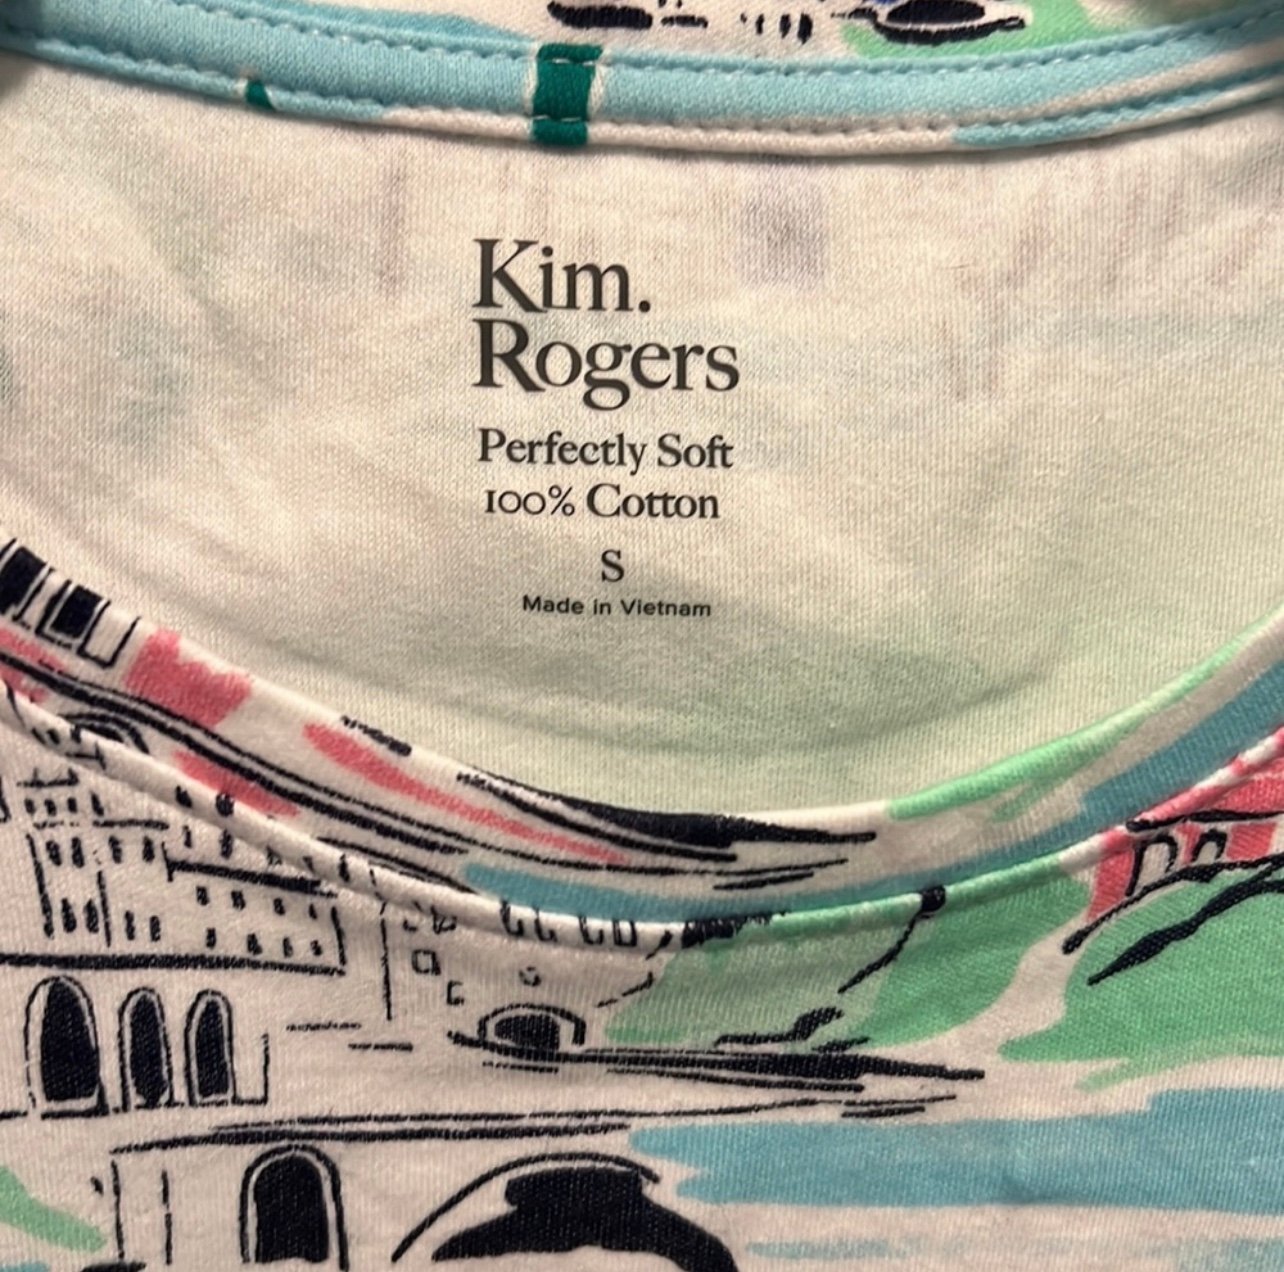 Nice 2 Kim Rogers Shirts HmeRge6pI no tax